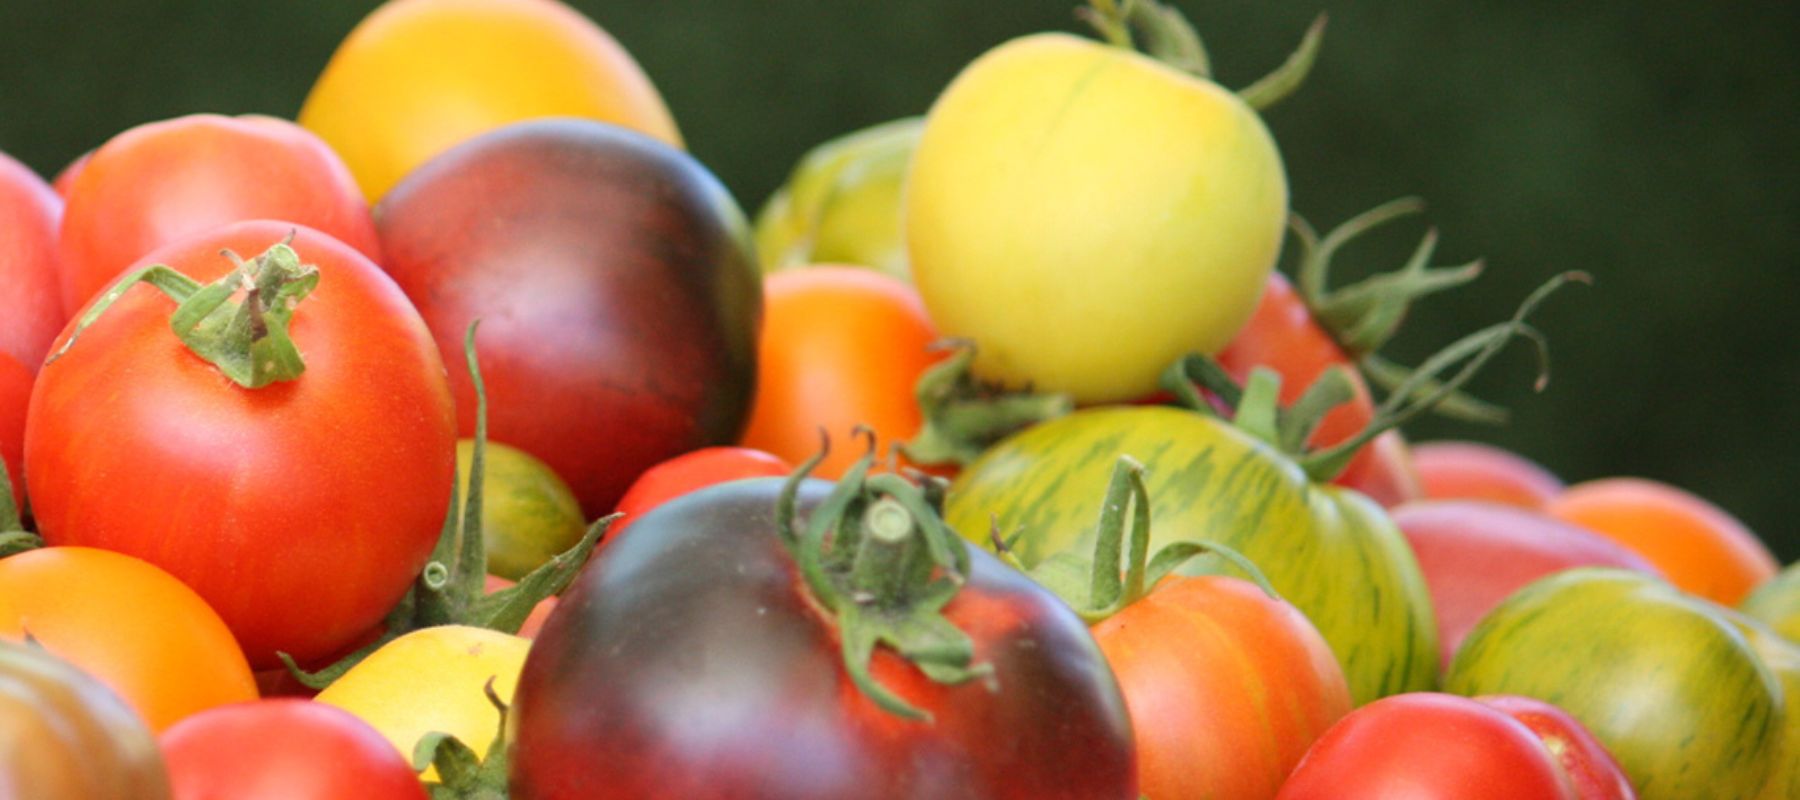 Tomato colours determine their flavours